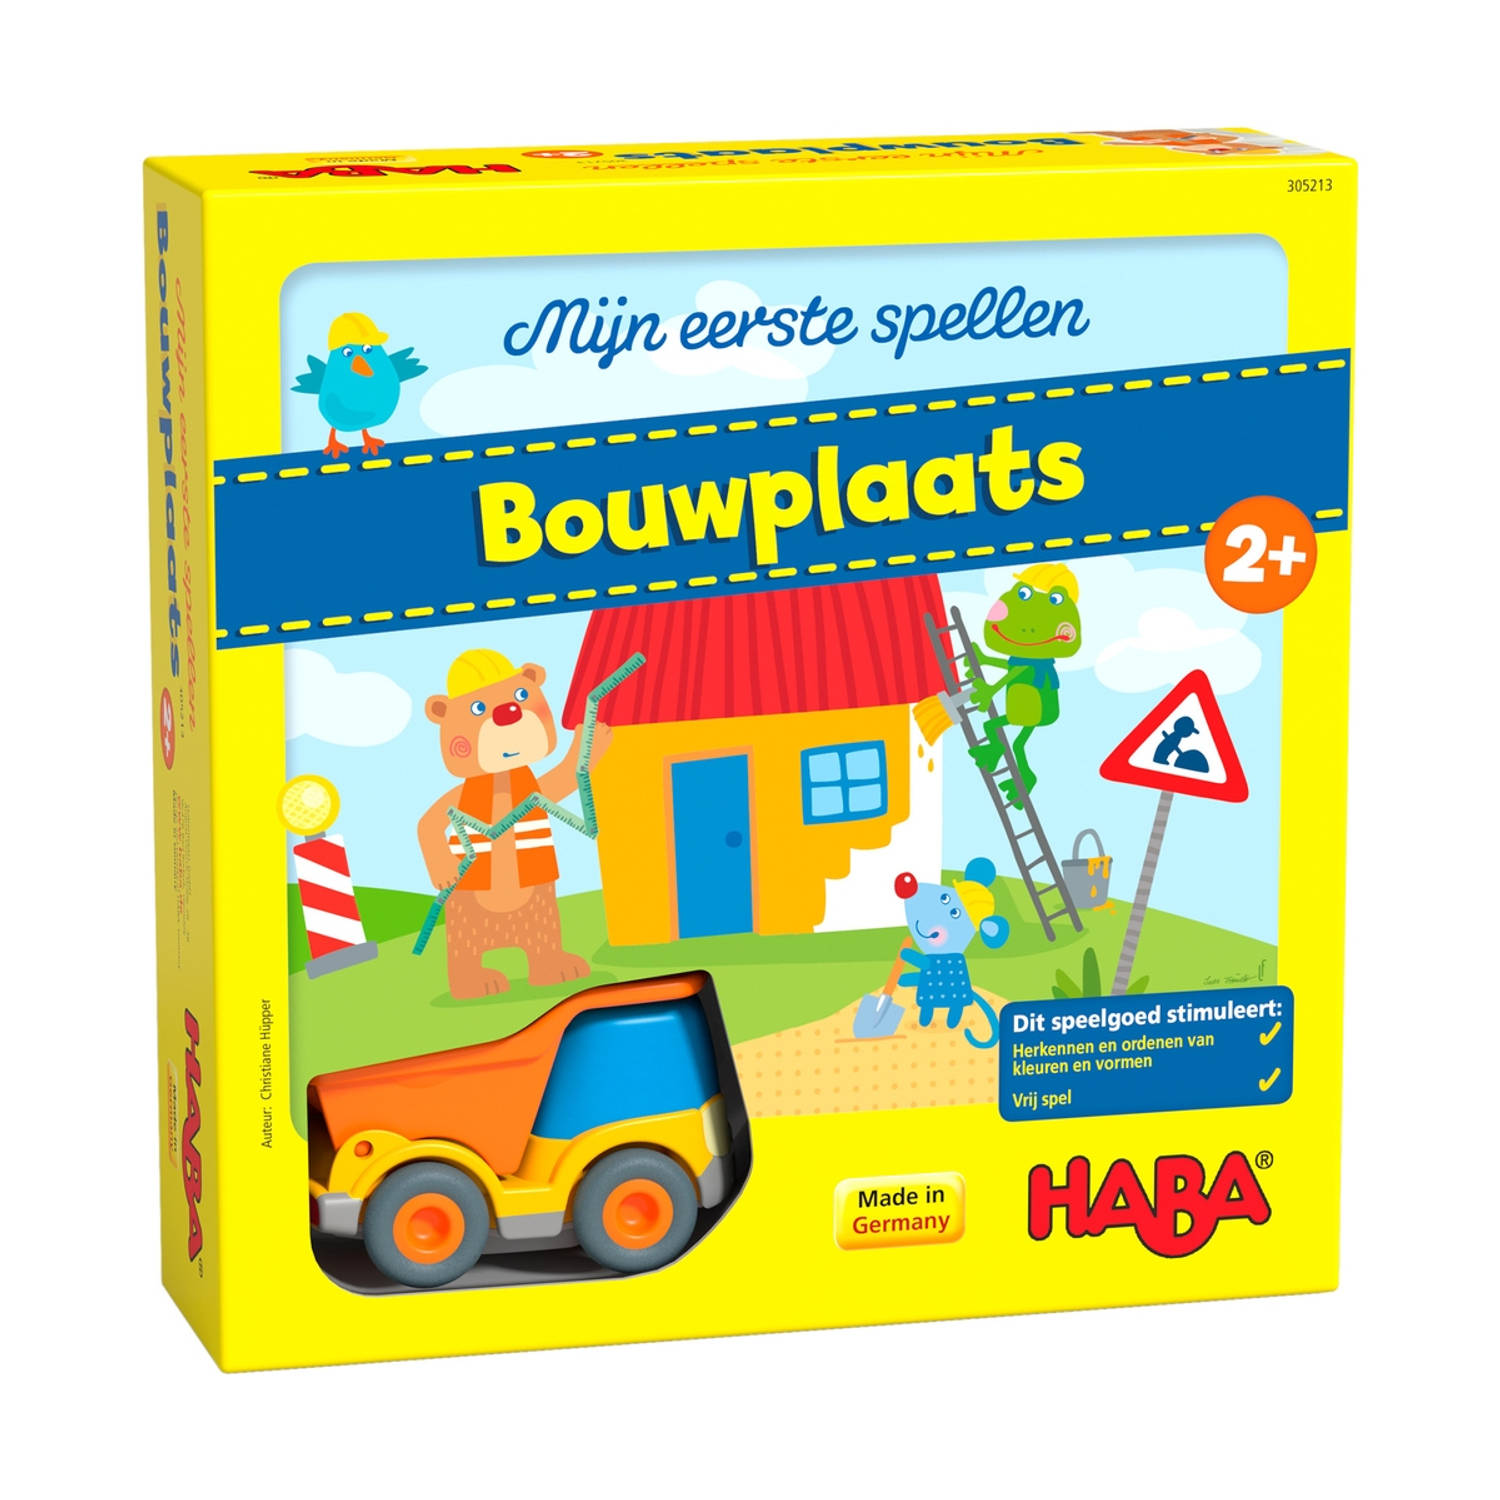 Haba kinderspel Mijn eerste spellen Bouwplaats (NL)